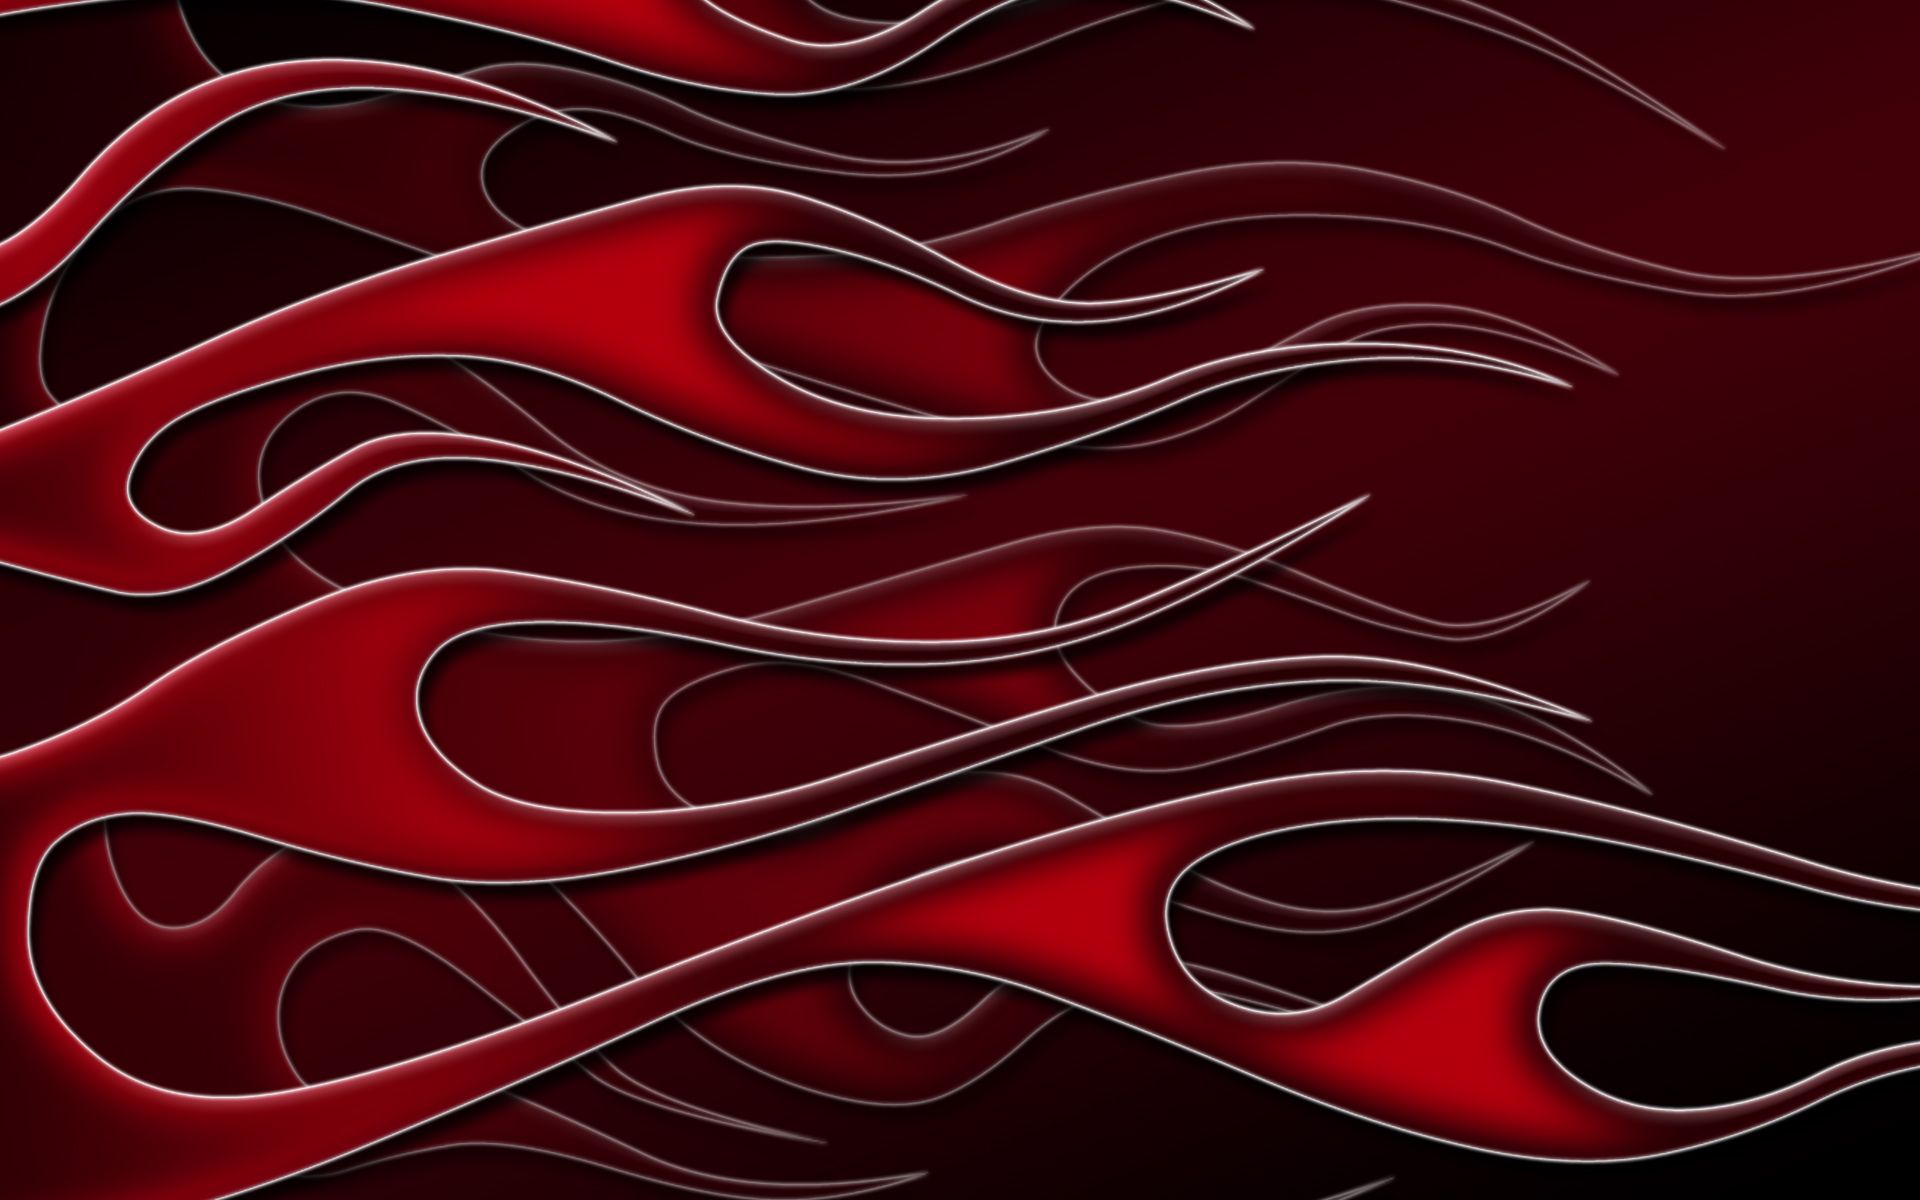 Flames - black red widescreen by jbensch on DeviantArt